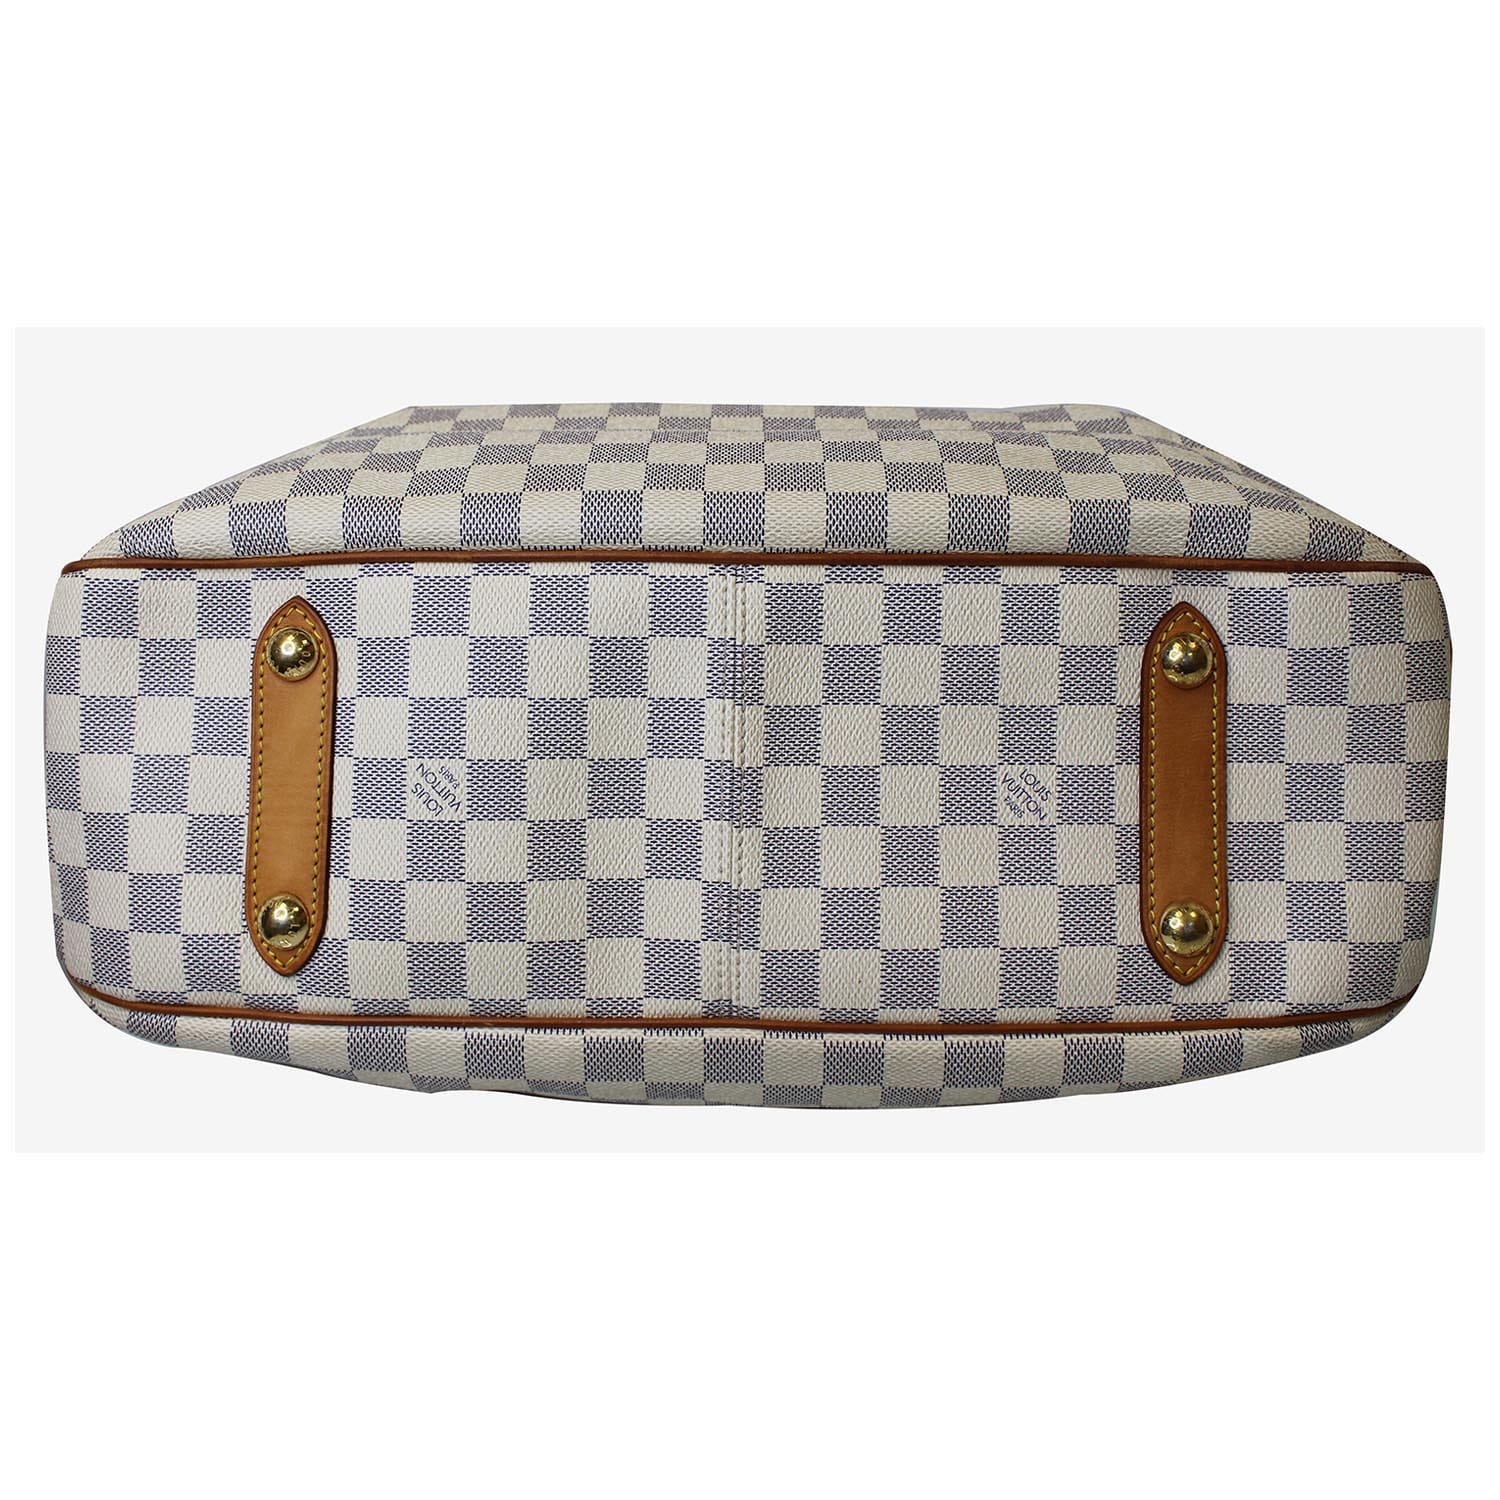 Louis Vuitton Damier Azur Siracusa GM Tote, Louis Vuitton Handbags